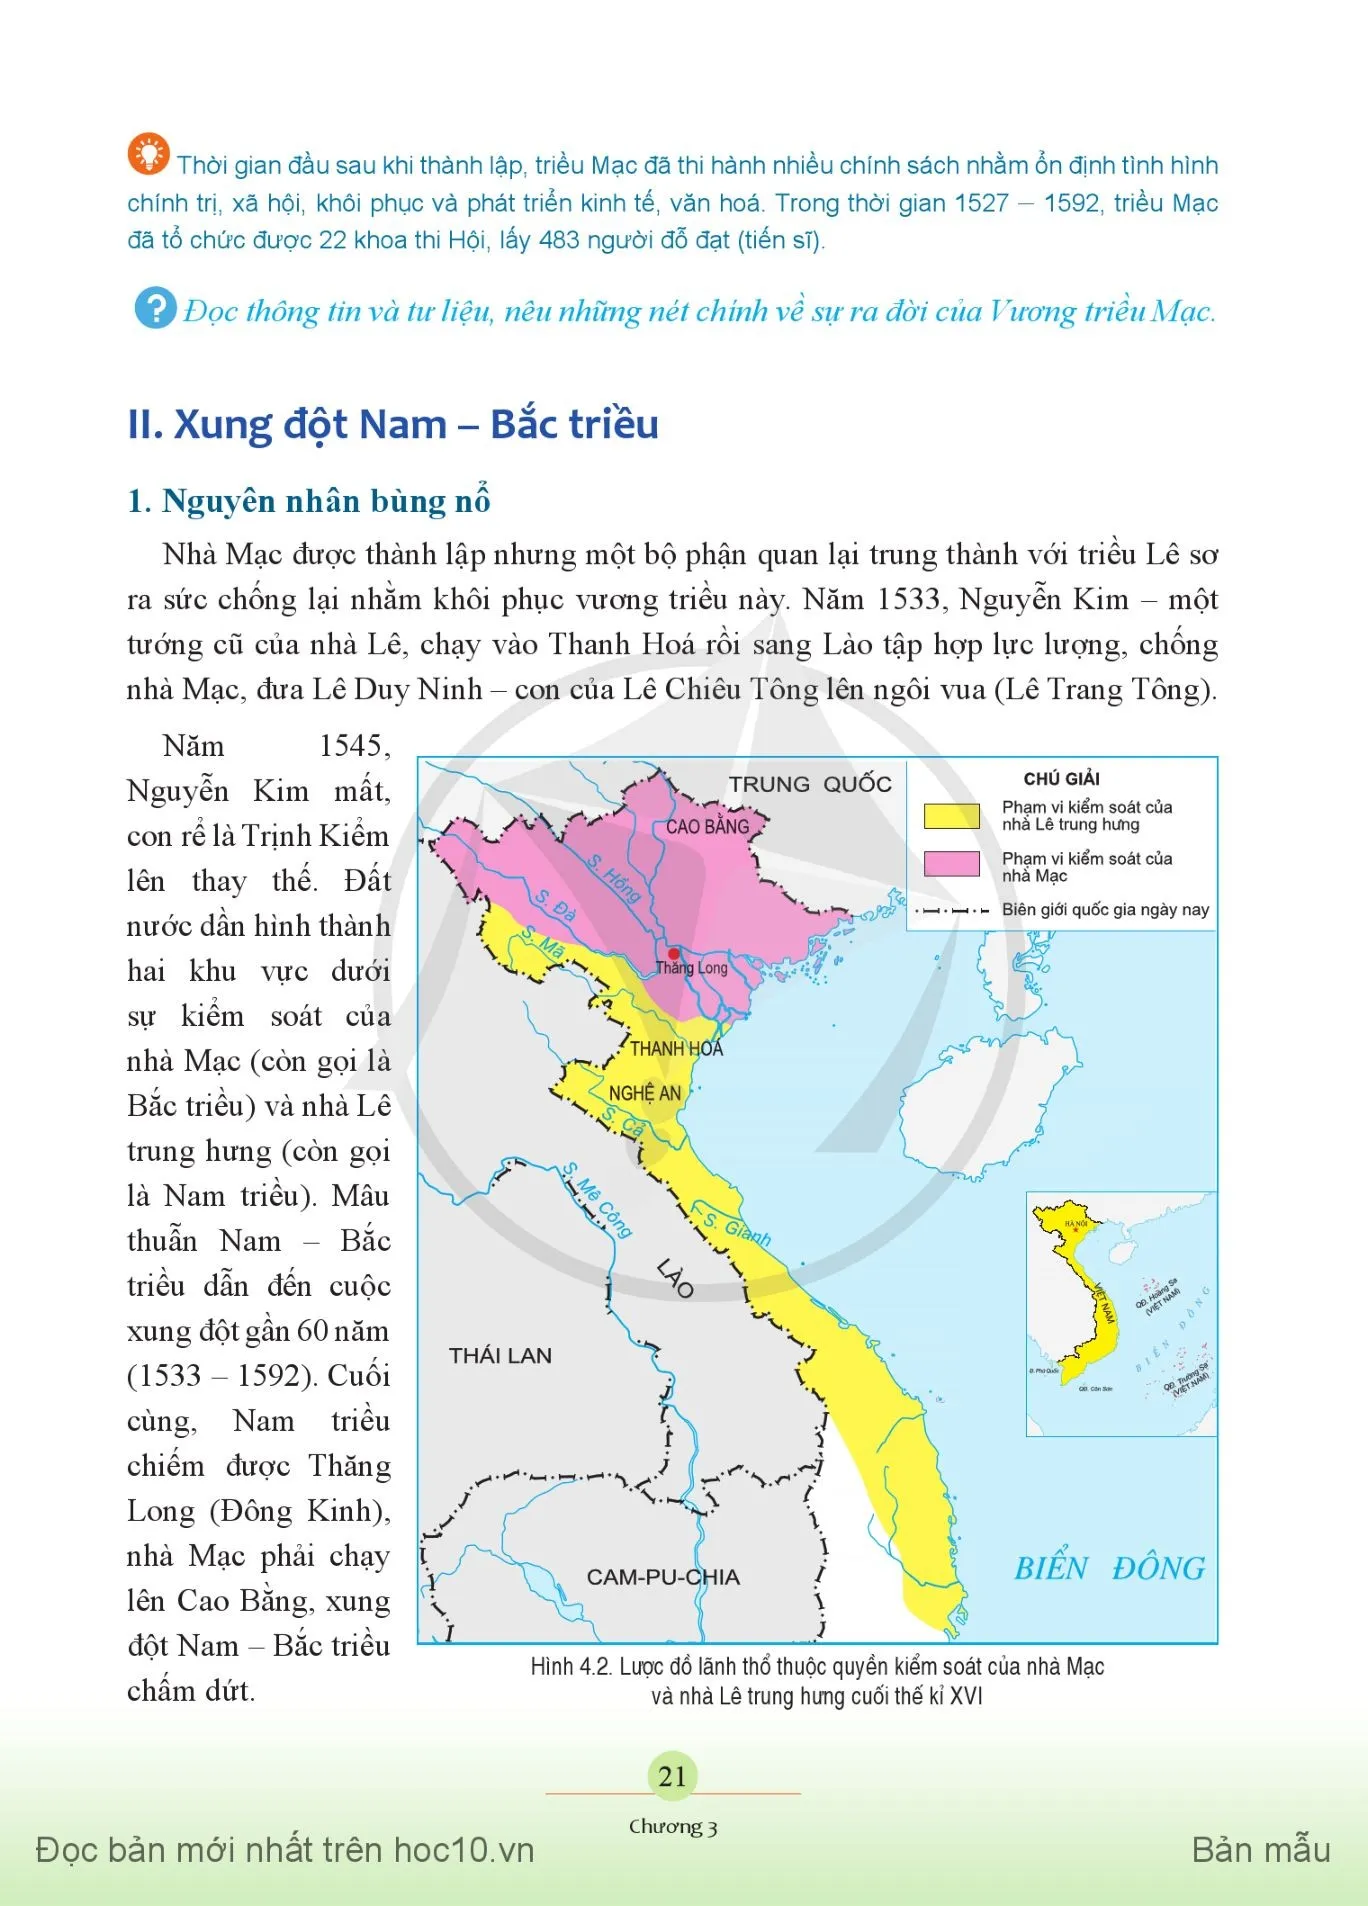 Bài 4. Xung đột Nam – Bắc triều, Trịnh – Nguyễn